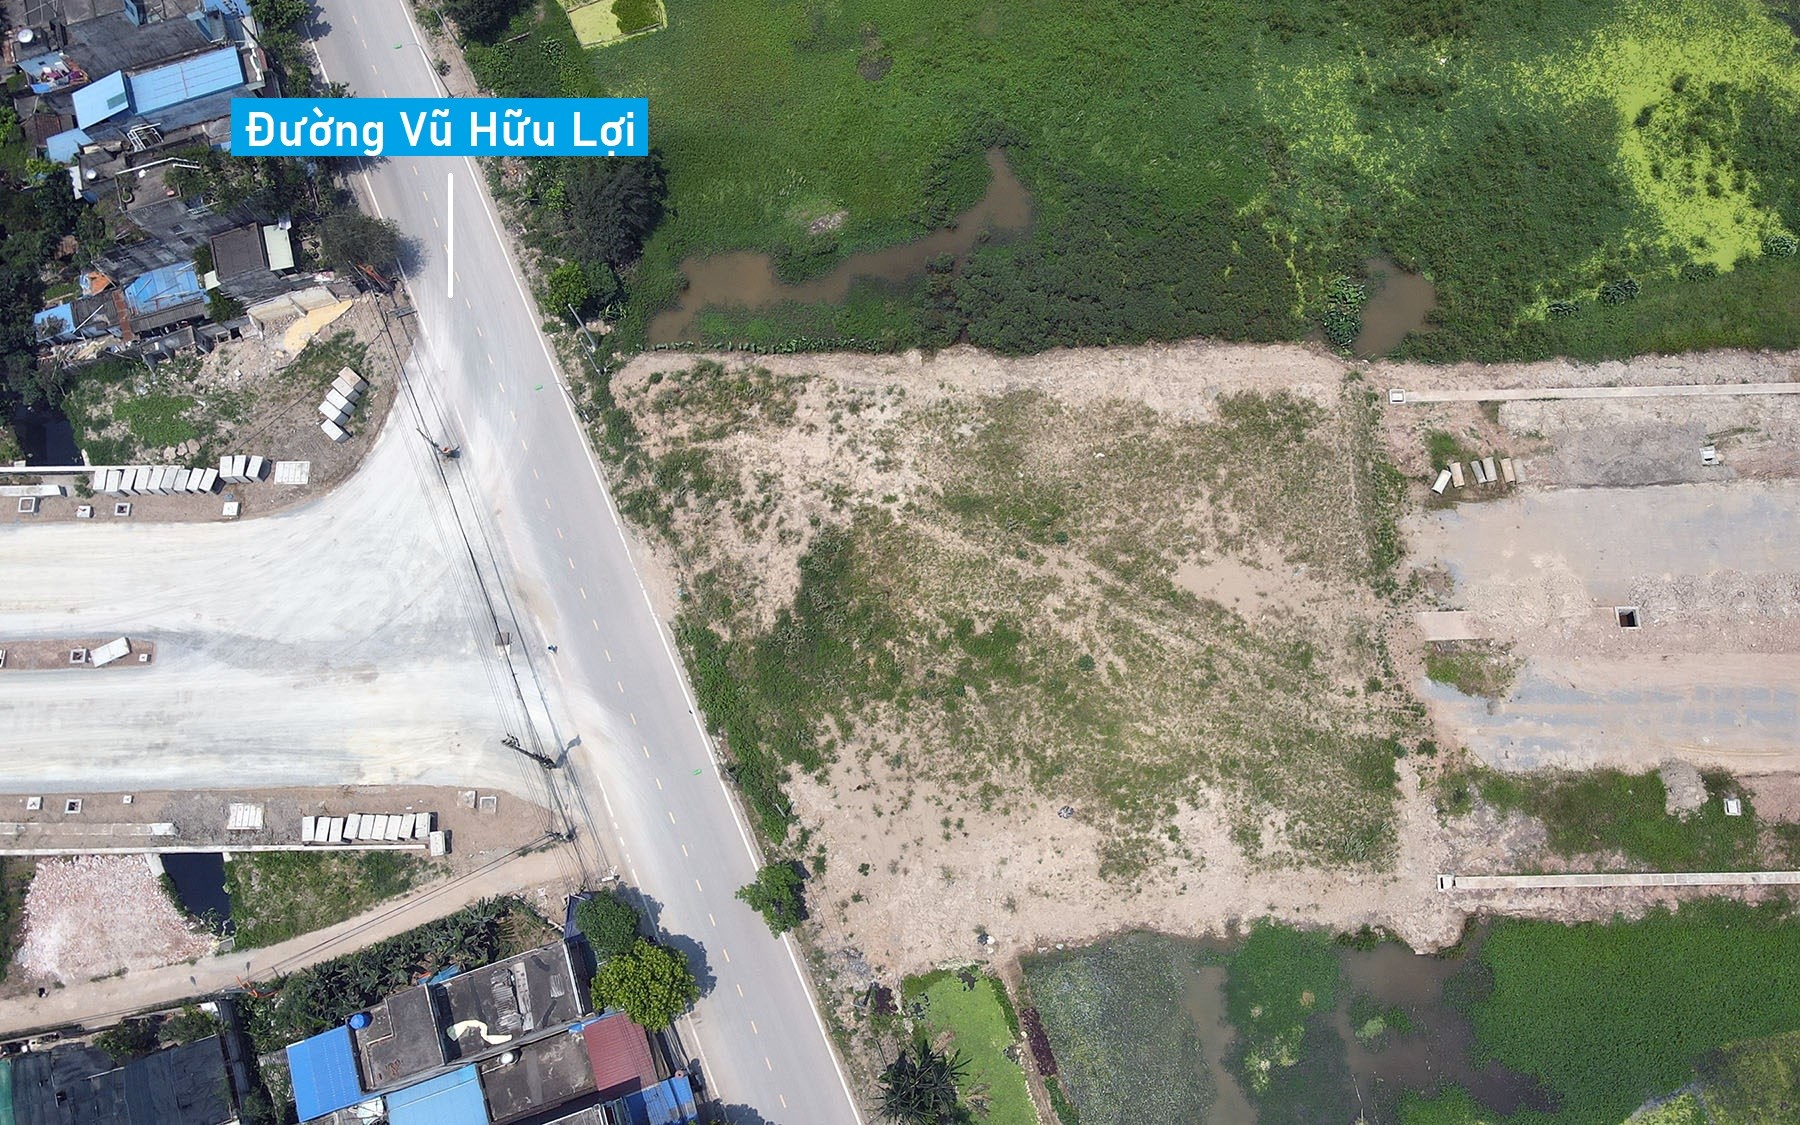 Toàn cảnh đường trục phía Nam TP Nam Định gần 1.500 tỷ đồng dự kiến hoàn thành năm nay